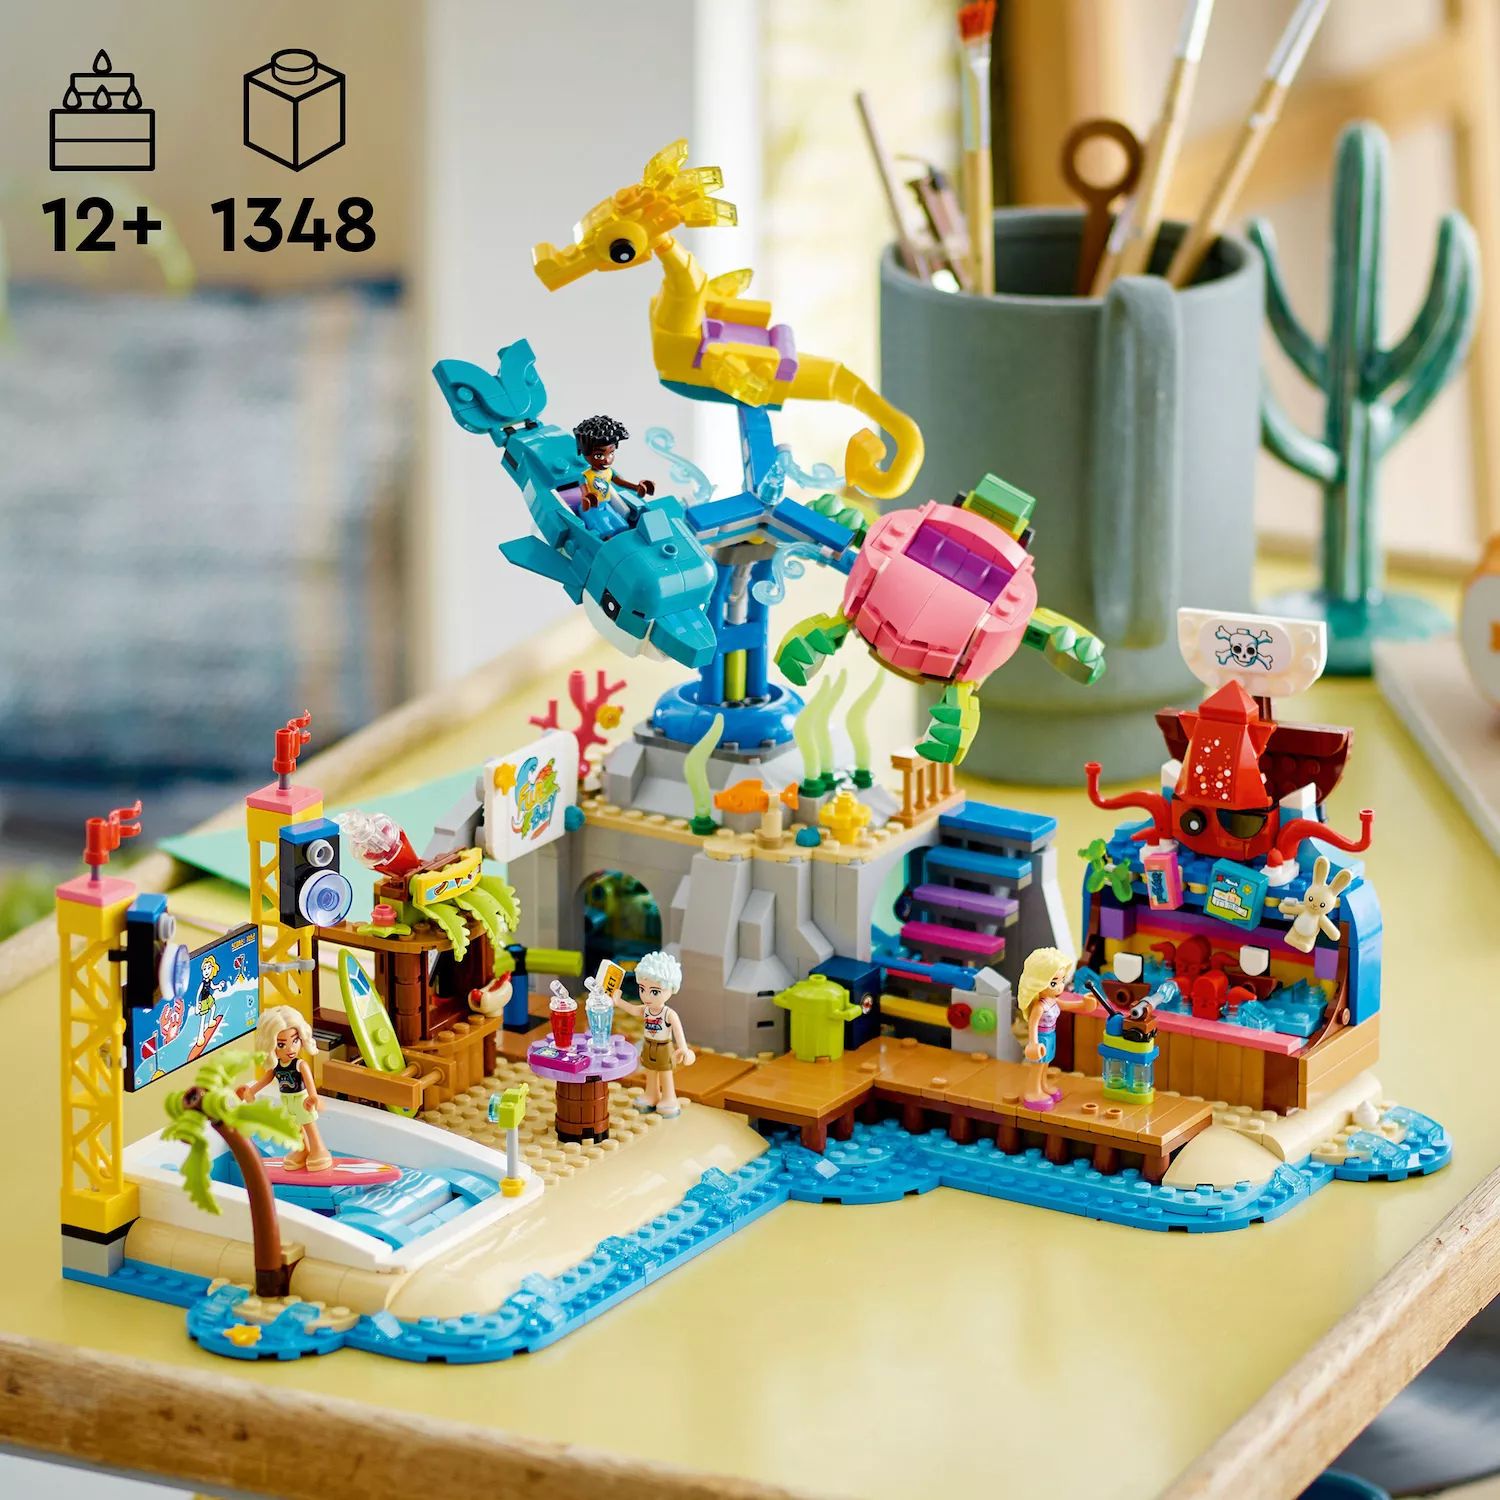 Конструктор LEGO Friends для подростков в пляжном парке развлечений 41737 (1348 деталей) LEGO конструктор lego friends 41128 космический аттракцион в парке развлечений 195 дет